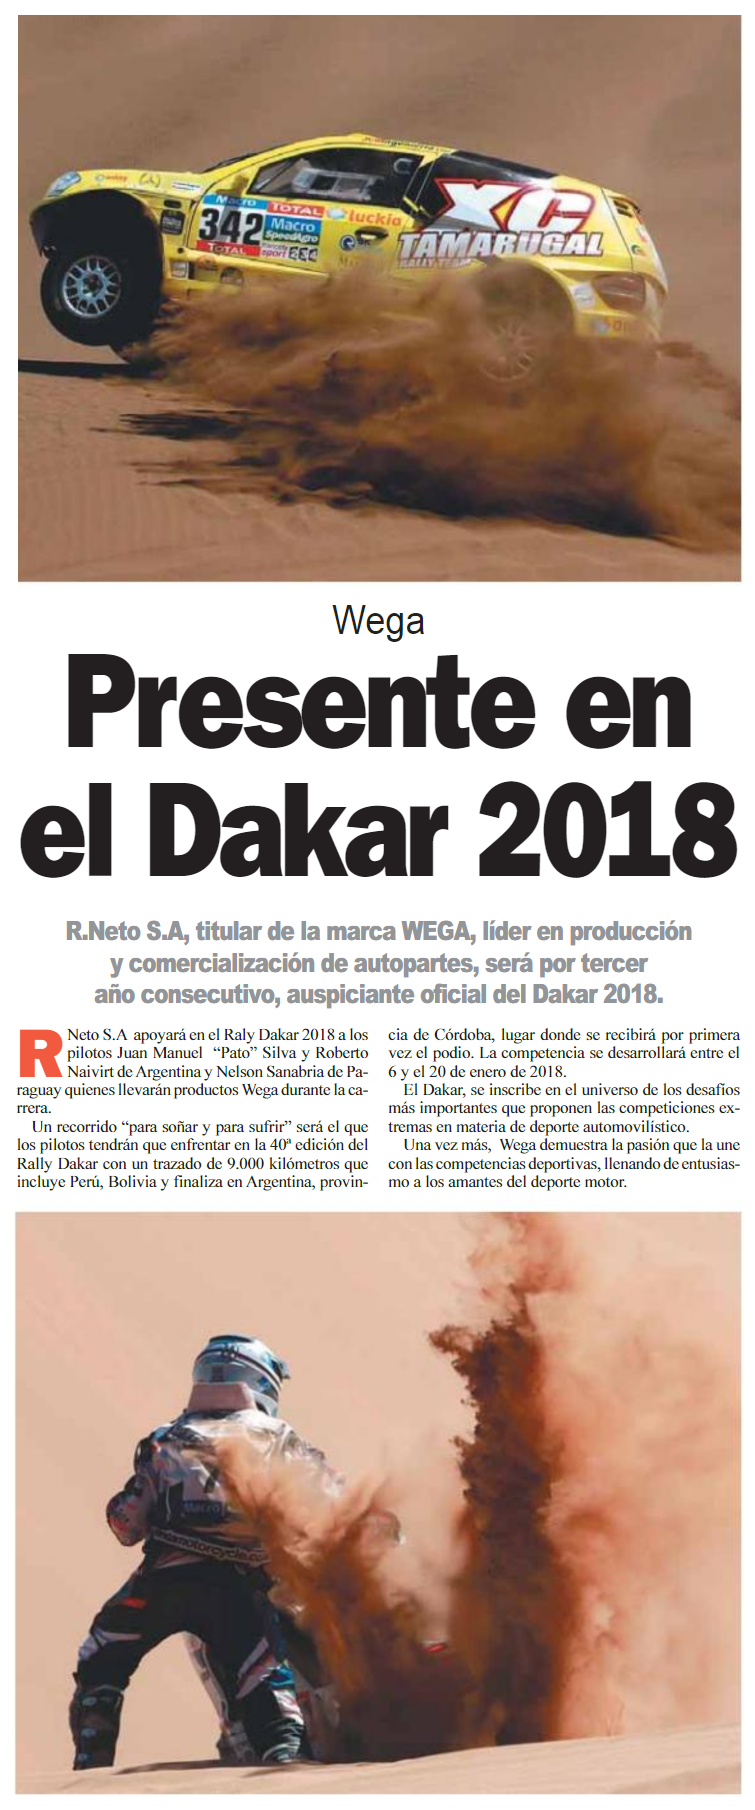 Wega presente en el Dakar 2018